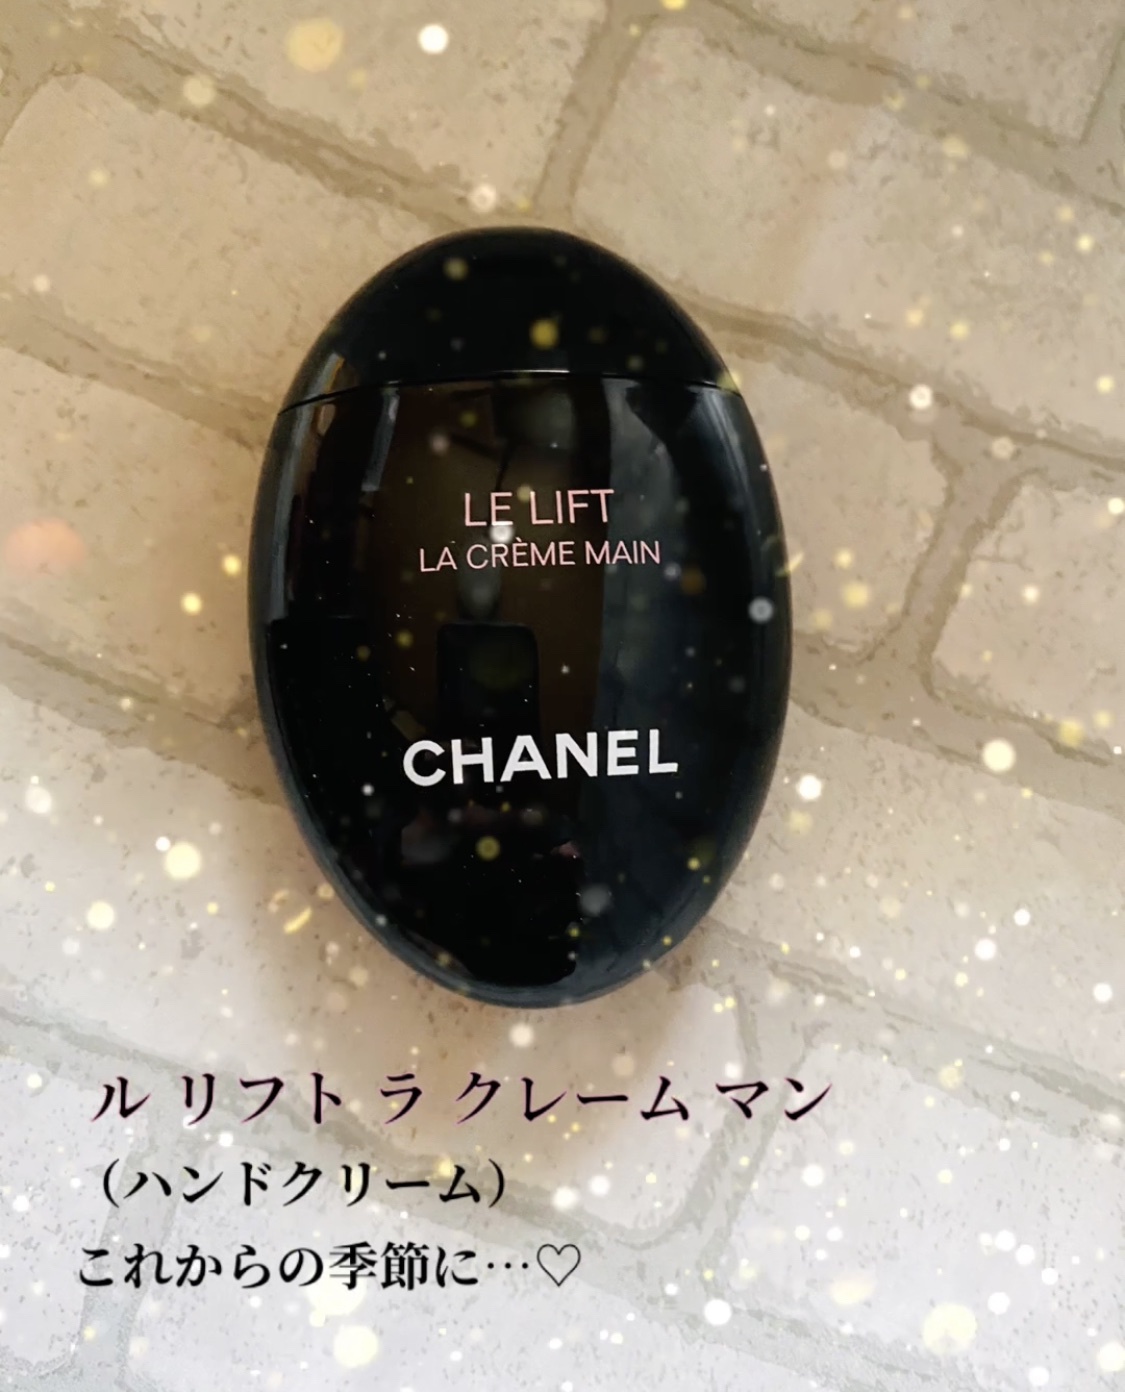 シャネル / ル リフト ラ クレーム マンの公式商品情報｜美容・化粧品 